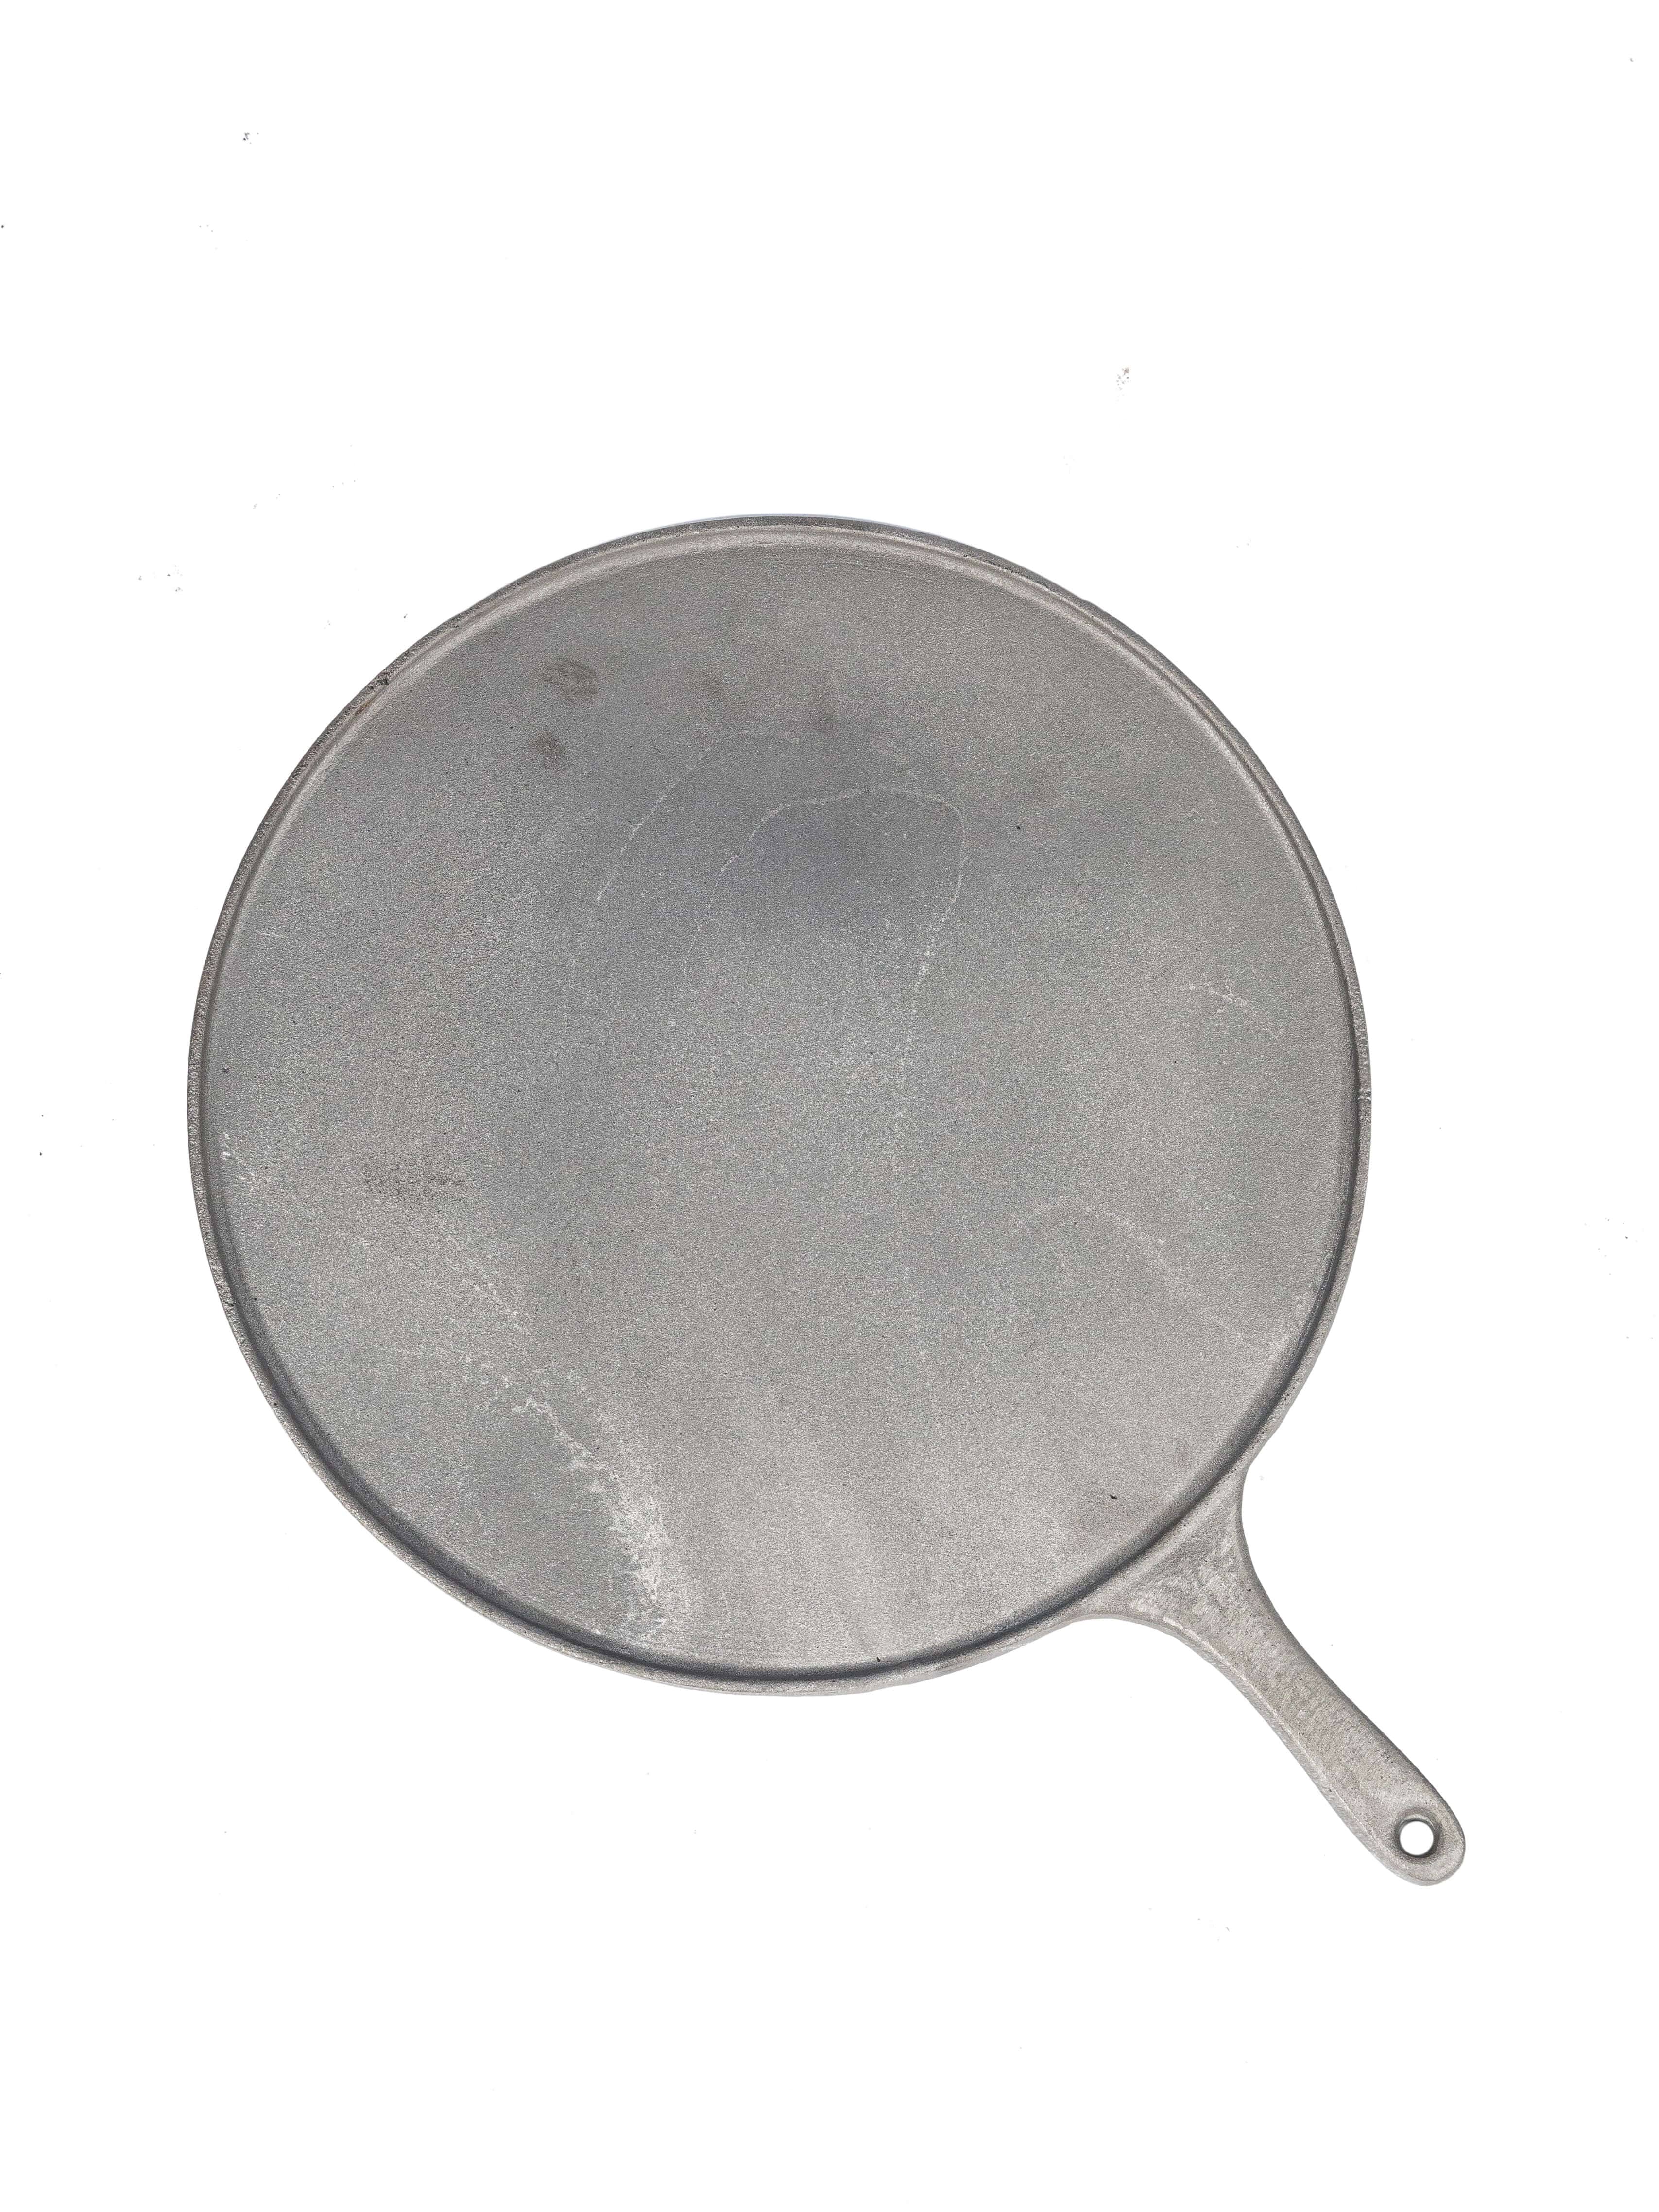 Чугунная сковорода-гриль #3 для мангала   | DLMZ .